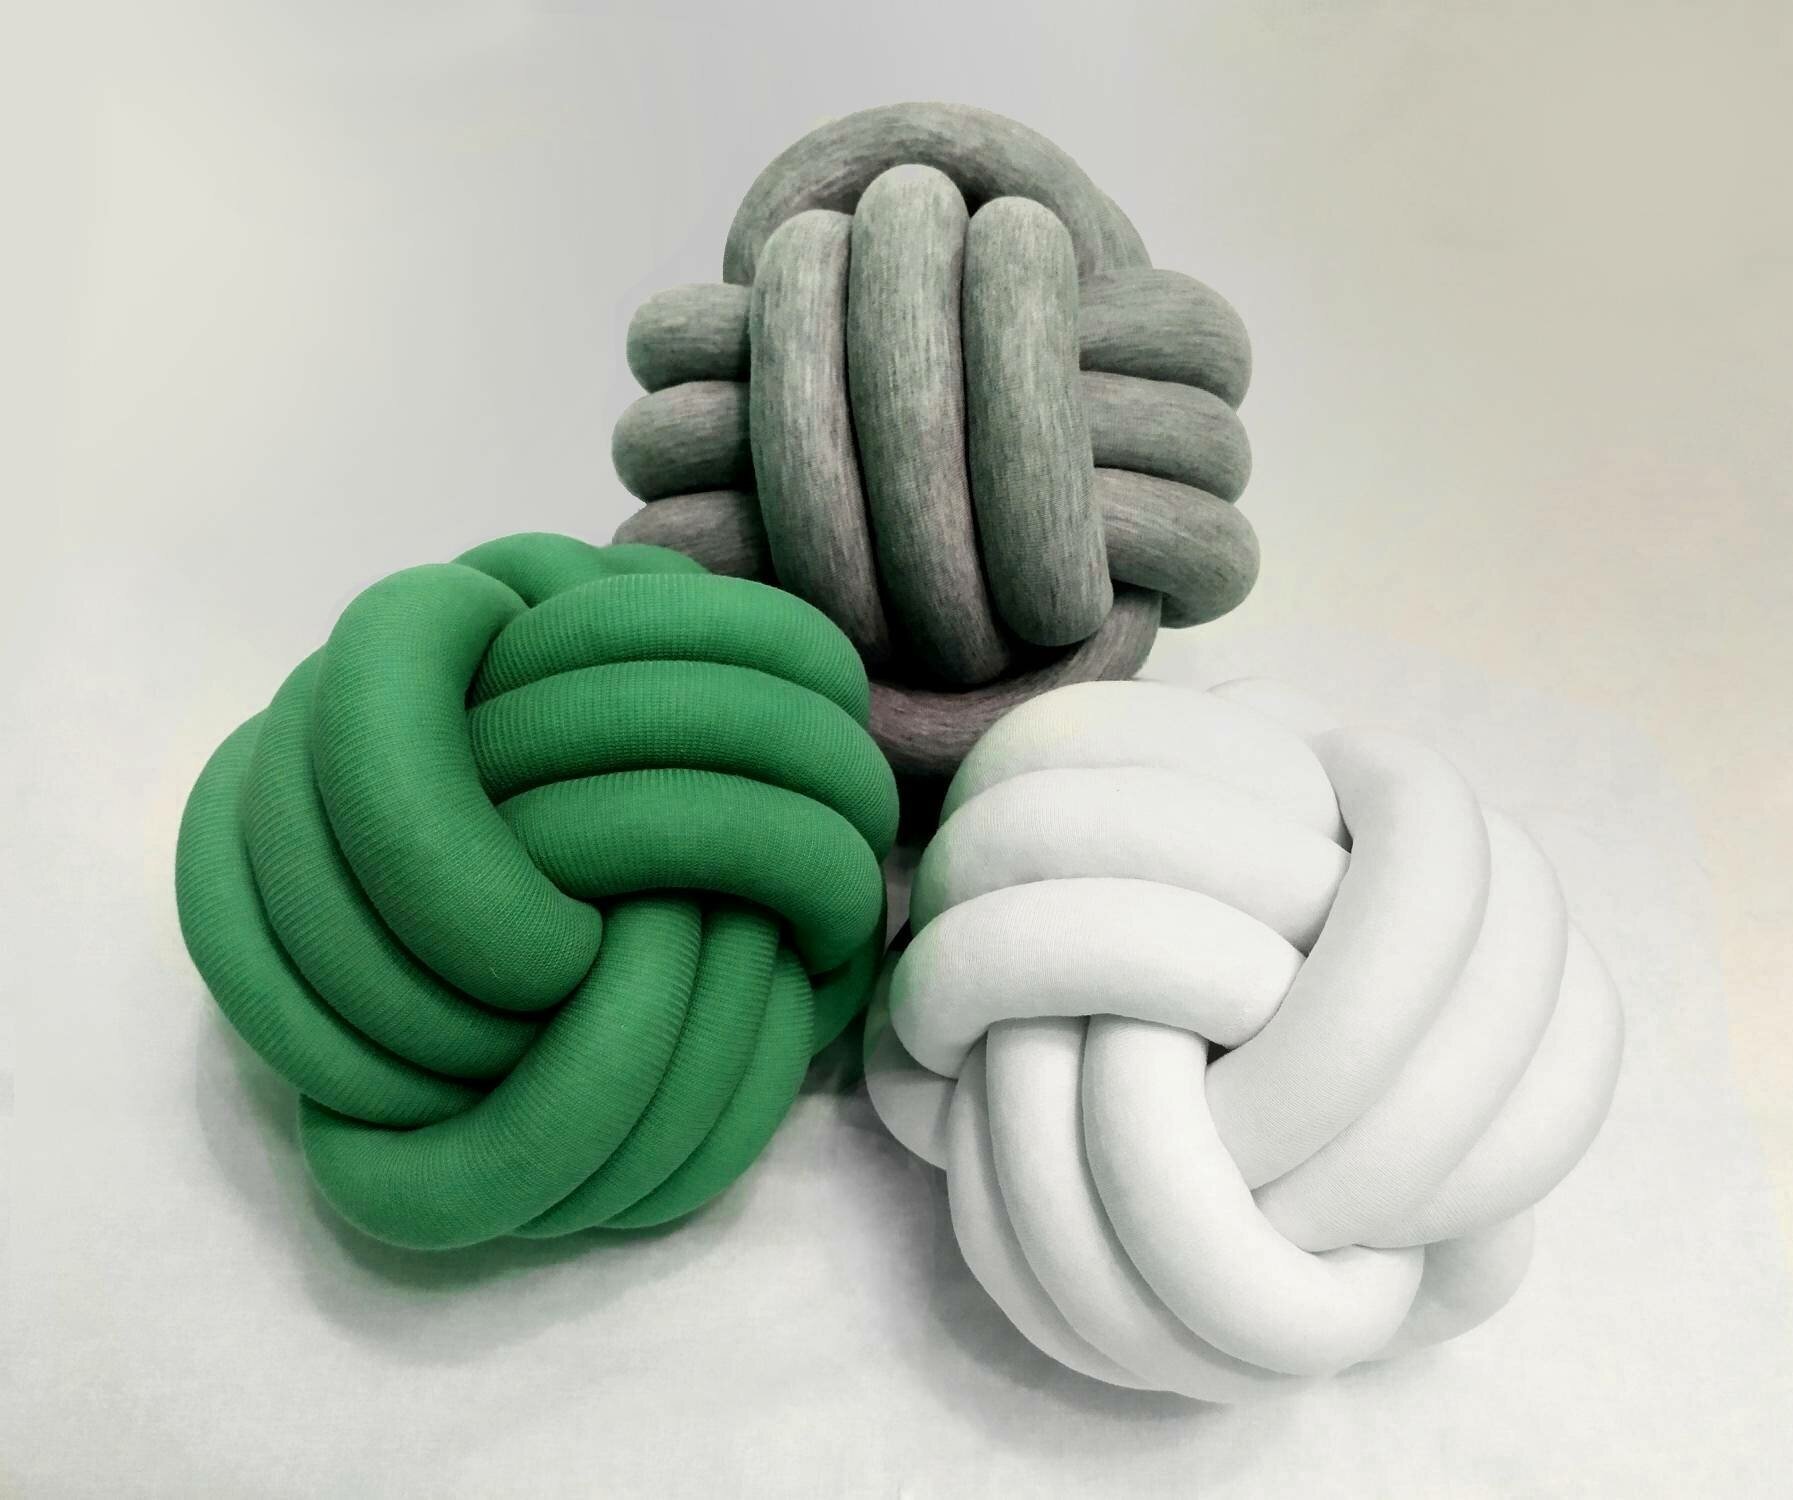 Декоративная подушка-узел 20х20 см. Современный интерьерный декор. Диванная подушка в форме шара зеленого цвета(П0028)